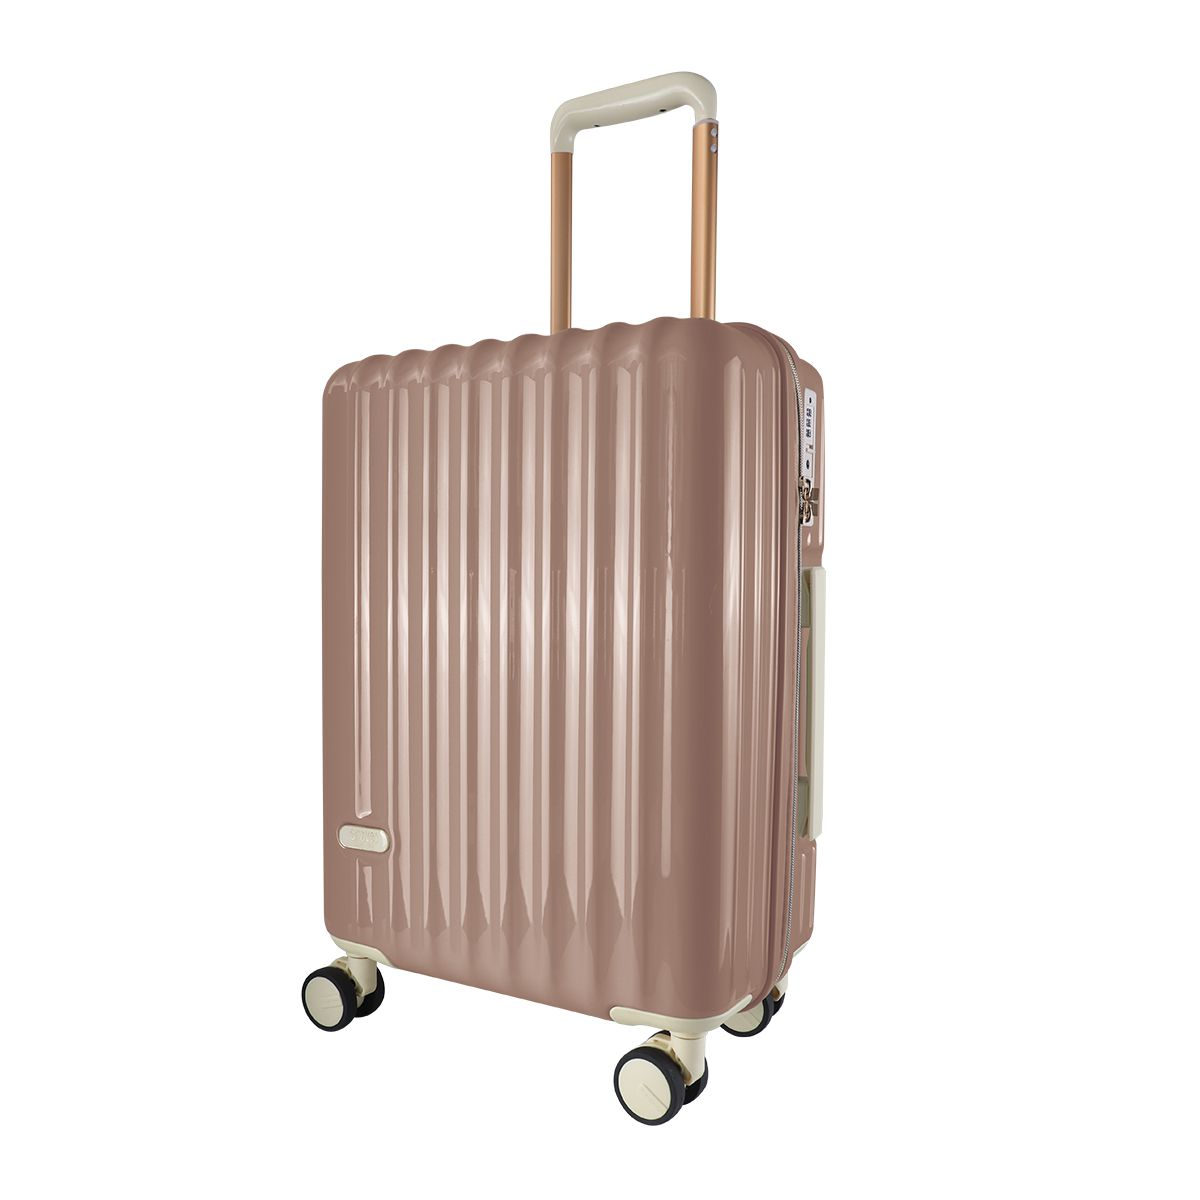 スーツケース キャリーケース Mサイズ 軽量 大型 キャリーバッグ 受託